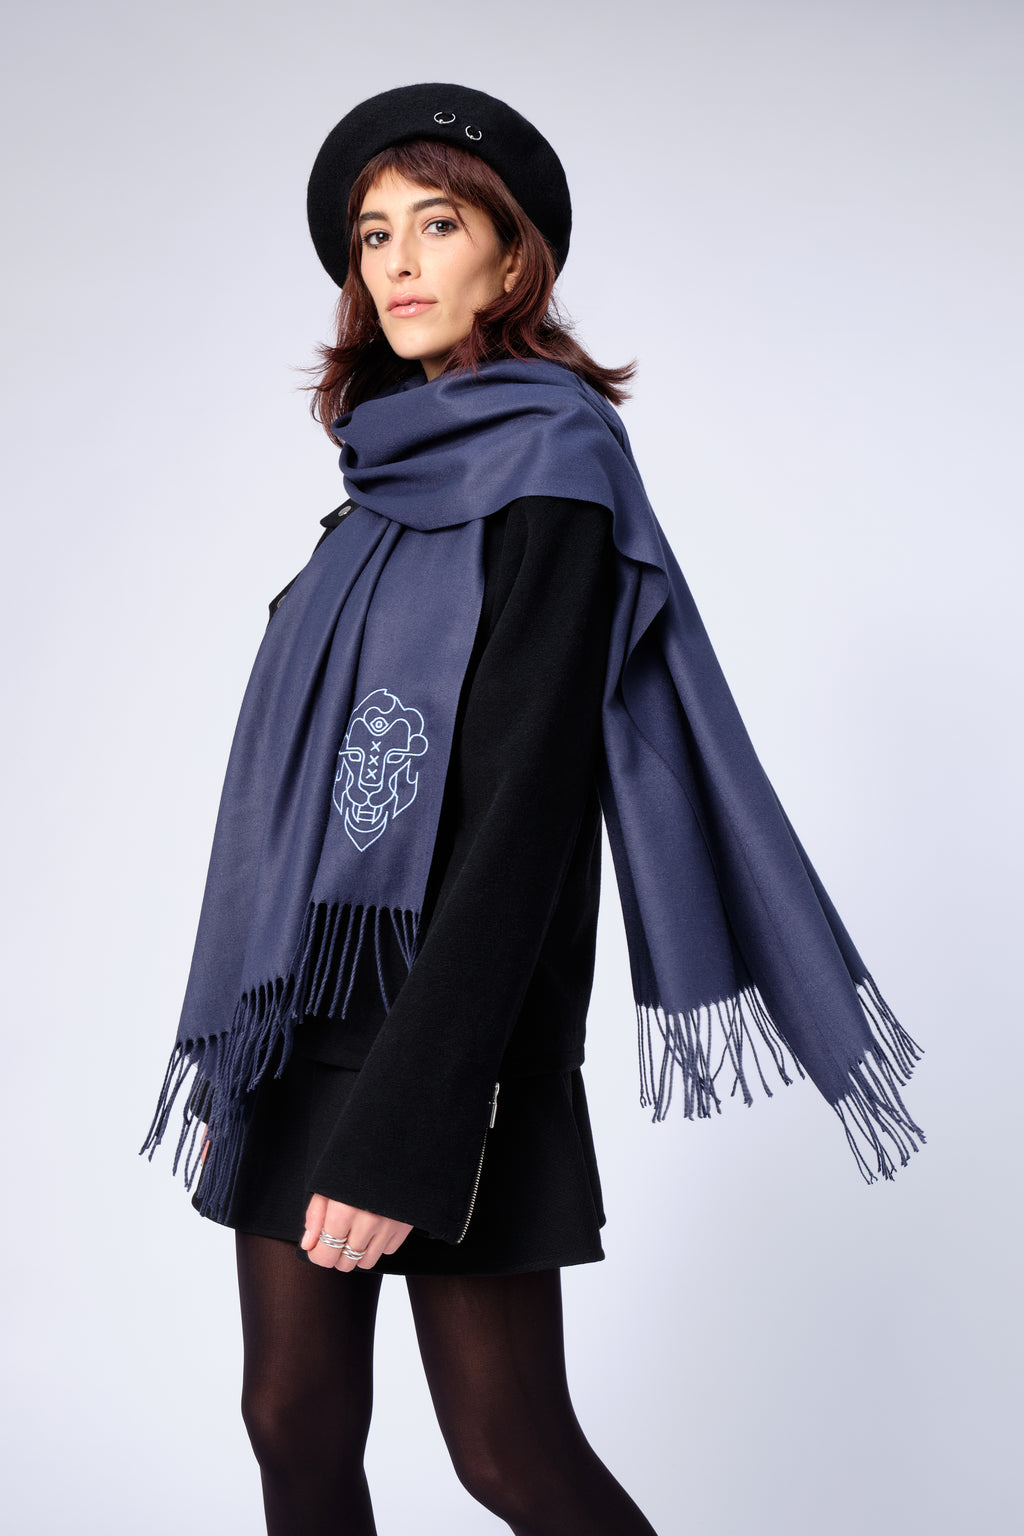 stillsveta dark blue cashmere scarf with Amsterdam lion design